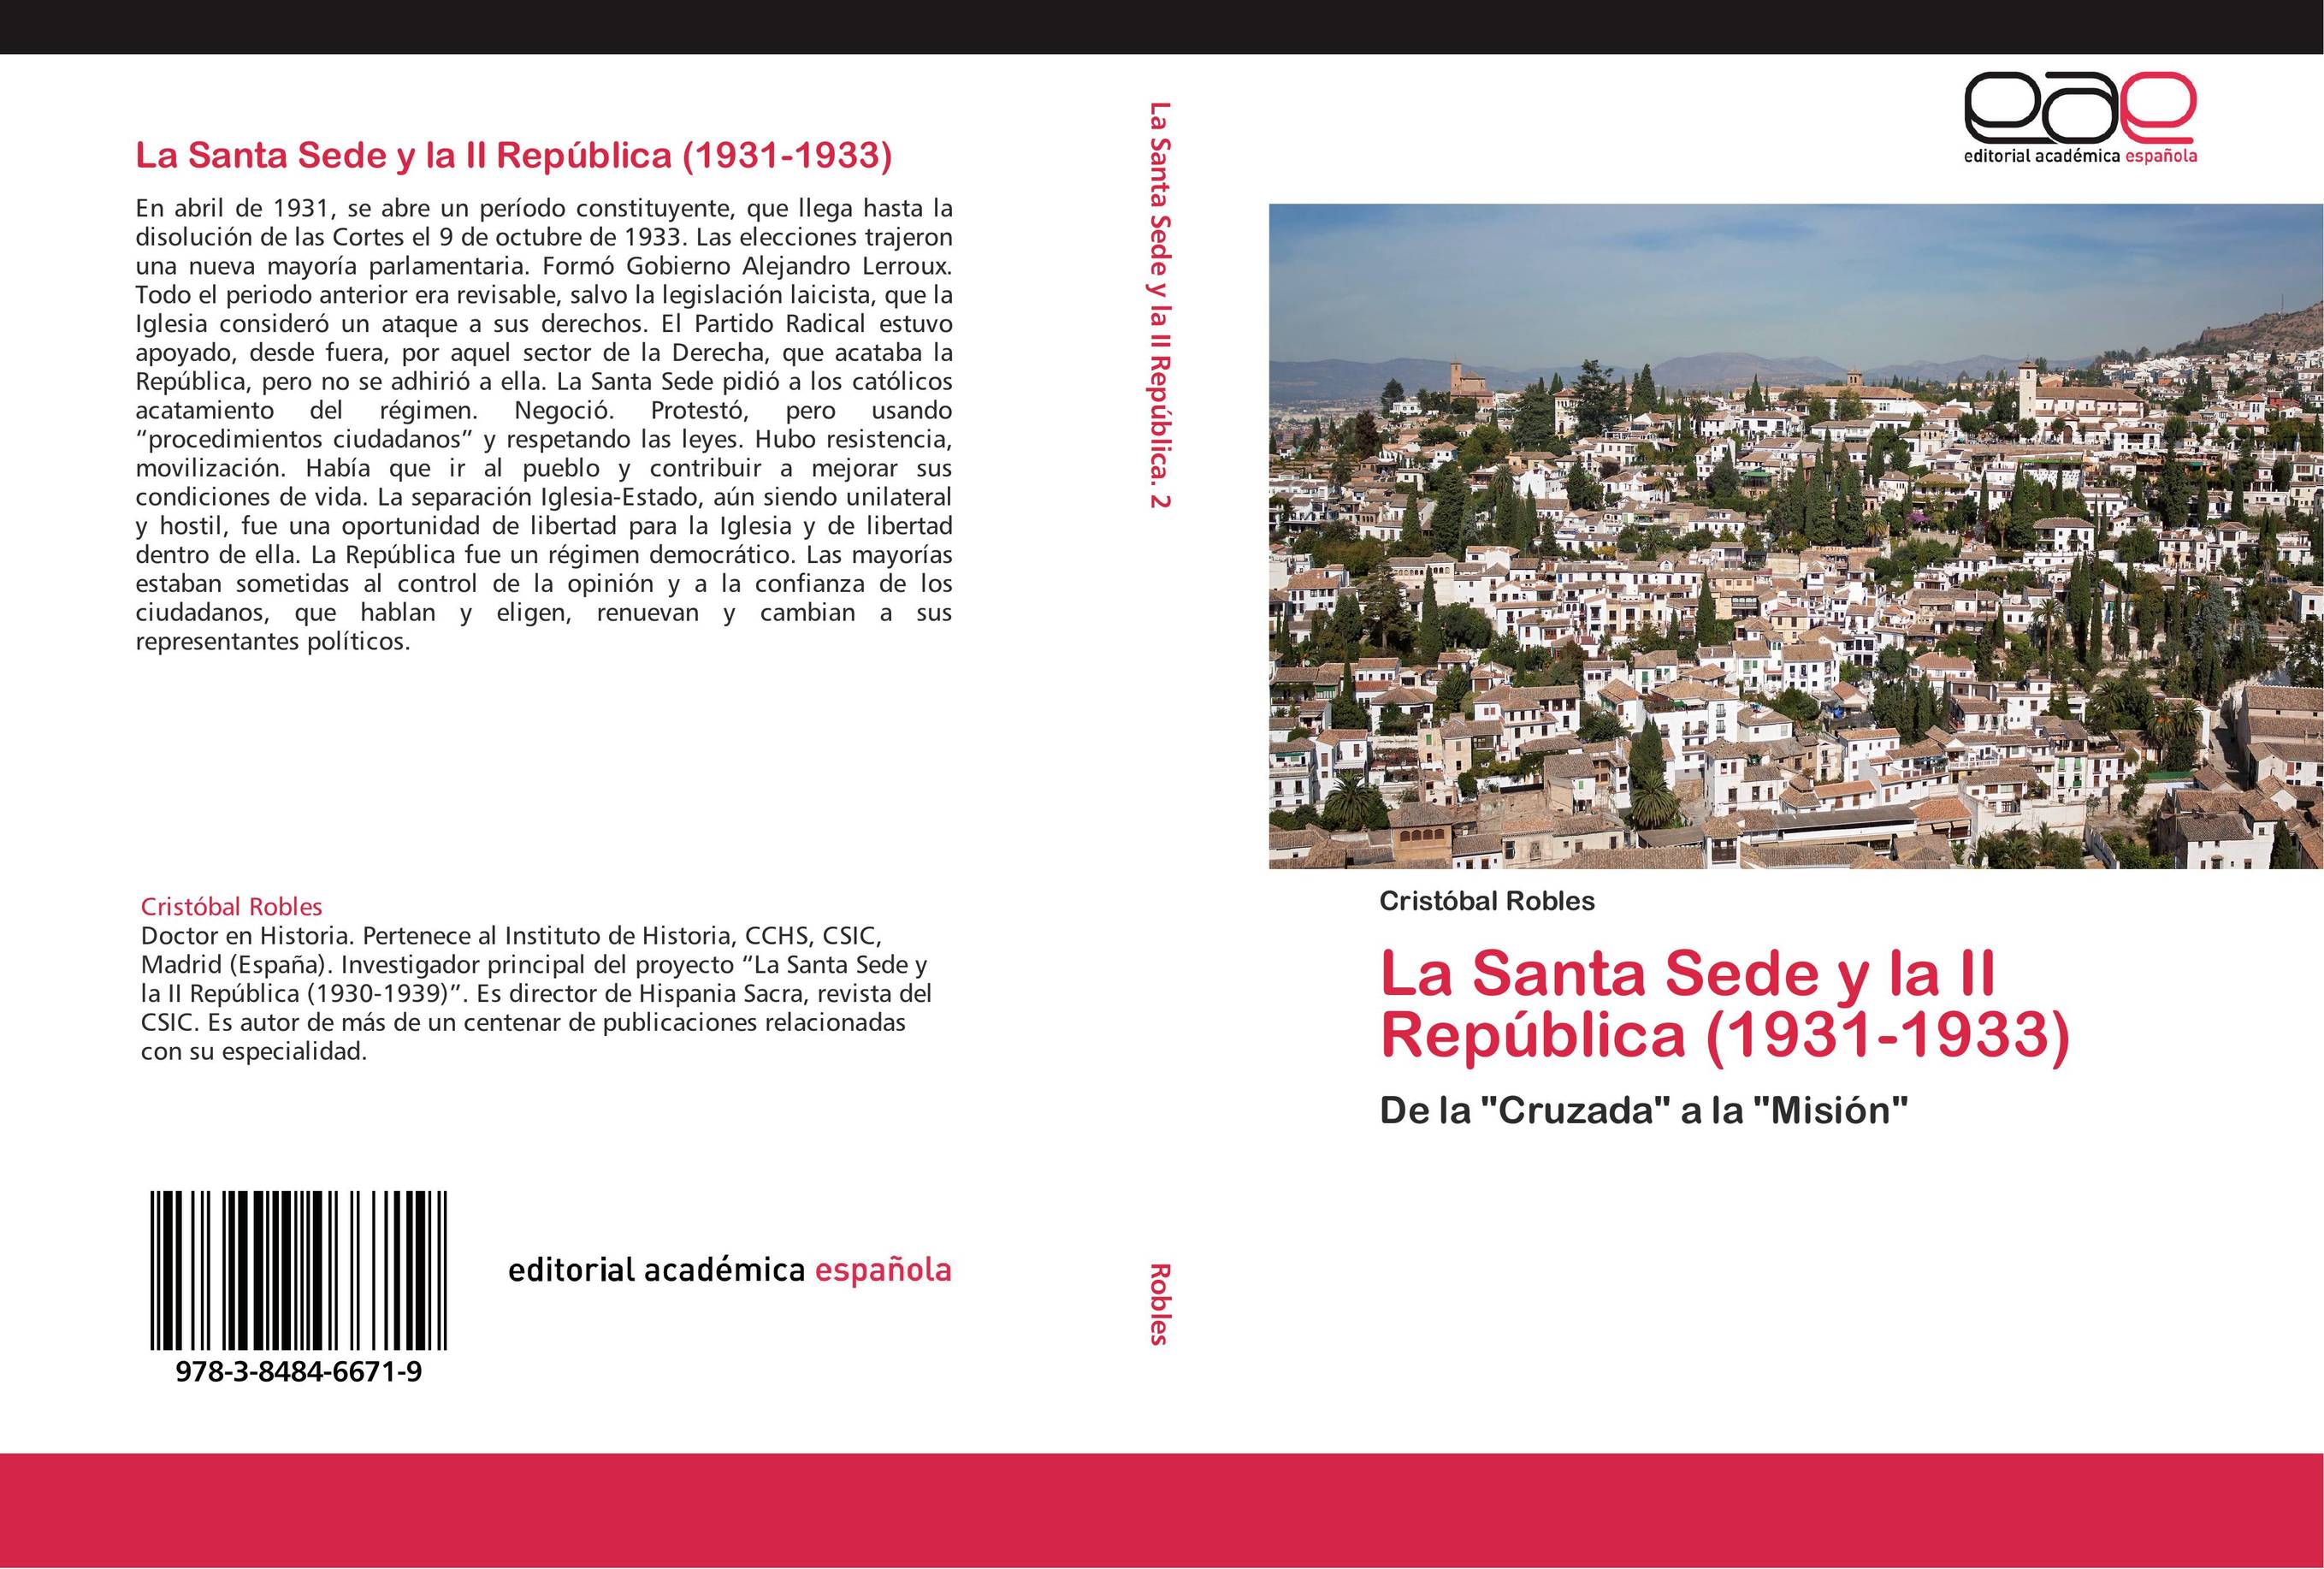 La Santa Sede y la II República (1931-1933)